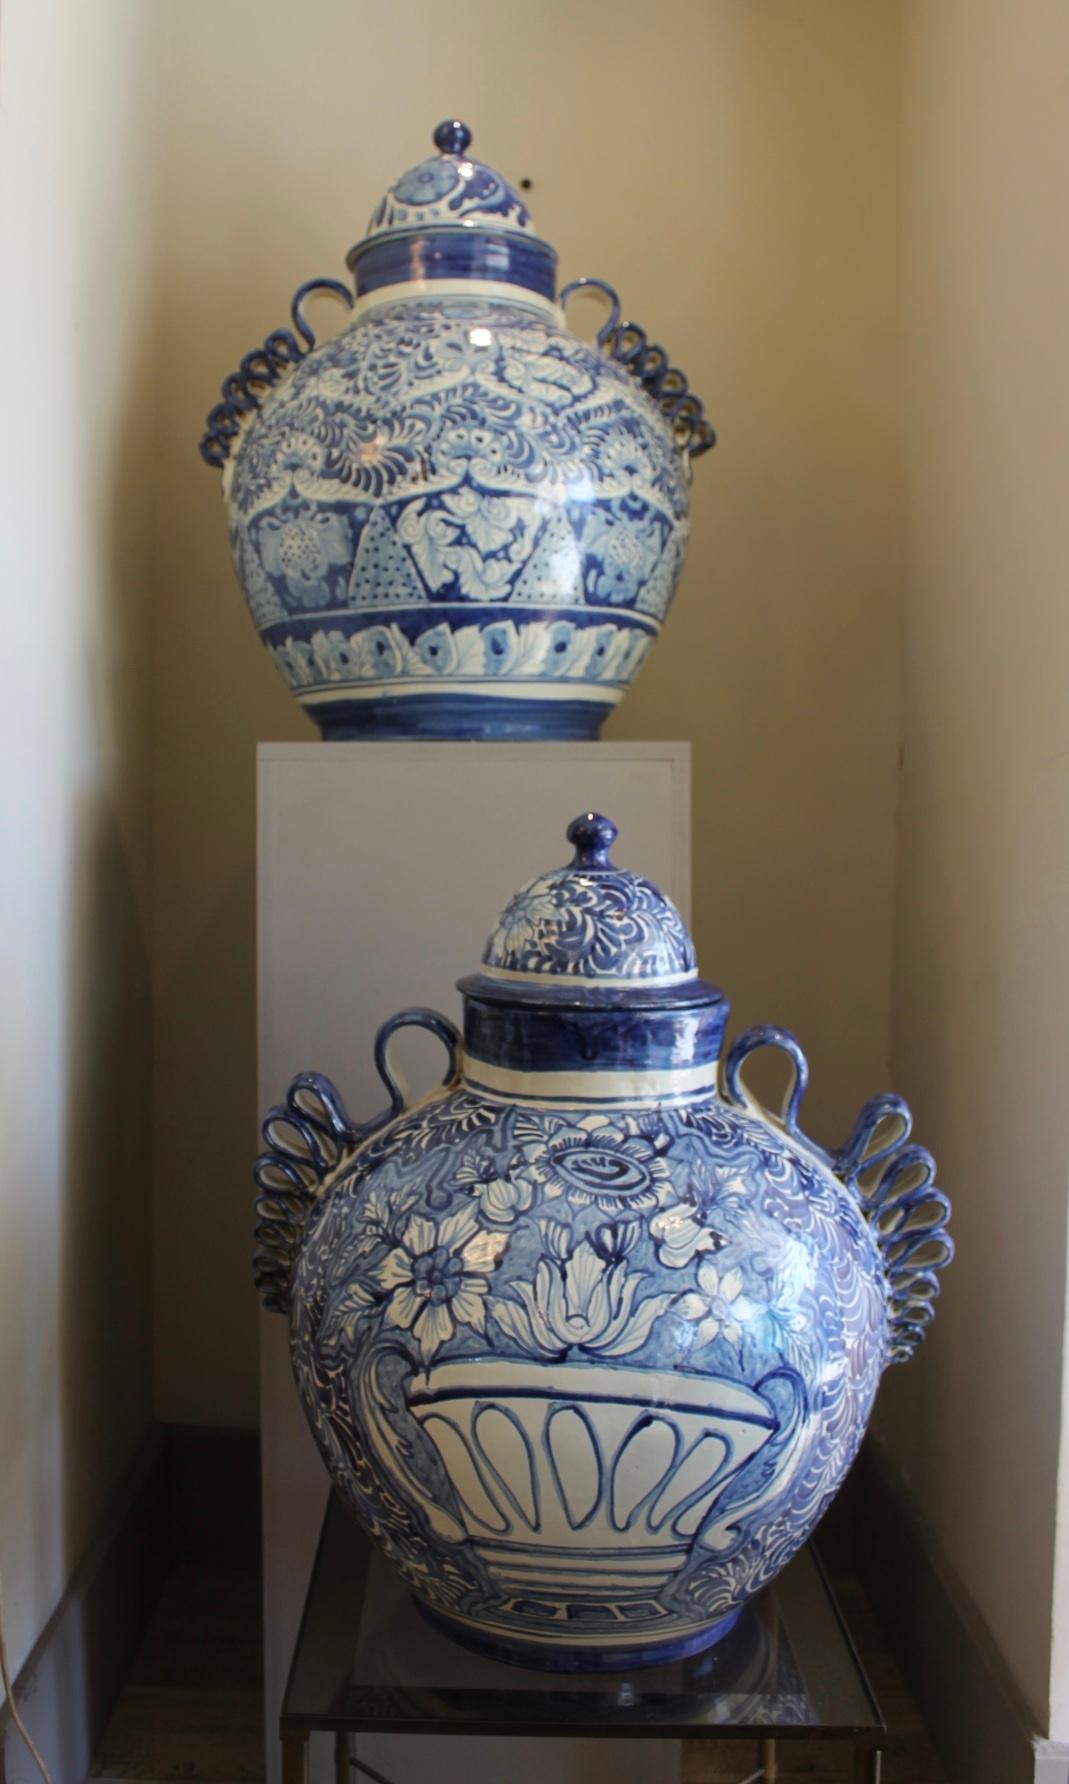 Paire de jarres en céramique bleue et blanche, Mexique, fabrication du XXe siècle.
Un pot est plus petit que l'autre.
Décoration florale et feuillue
Travail mexicain. Signé Amora
Bel ensemble de Canettes qui peuvent être placées sur un buffet. Très